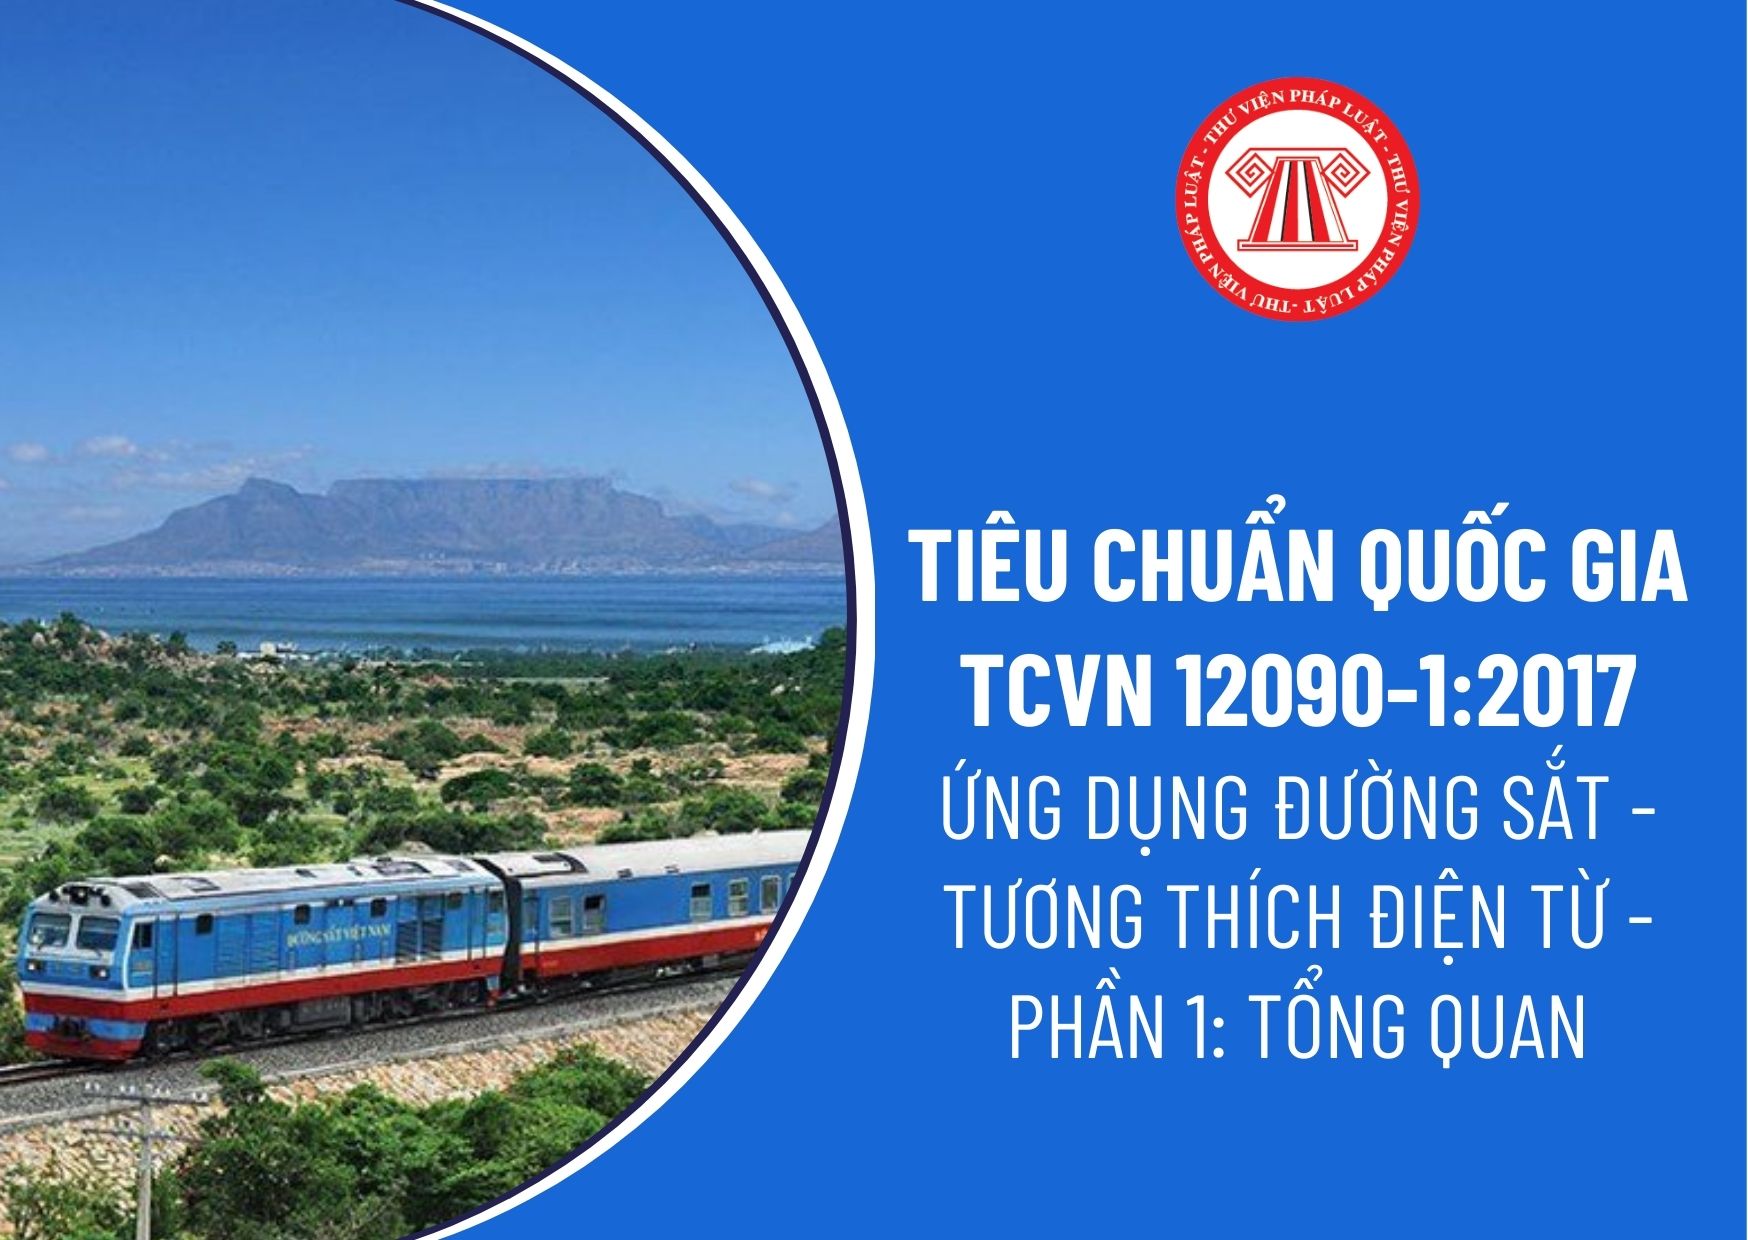 Tiêu chuẩn quốc gia TCVN 12090-1:2017 (EN 50121-1:2015) đối với Ứng dụng đường sắt về tương thích điện từ ra sao?